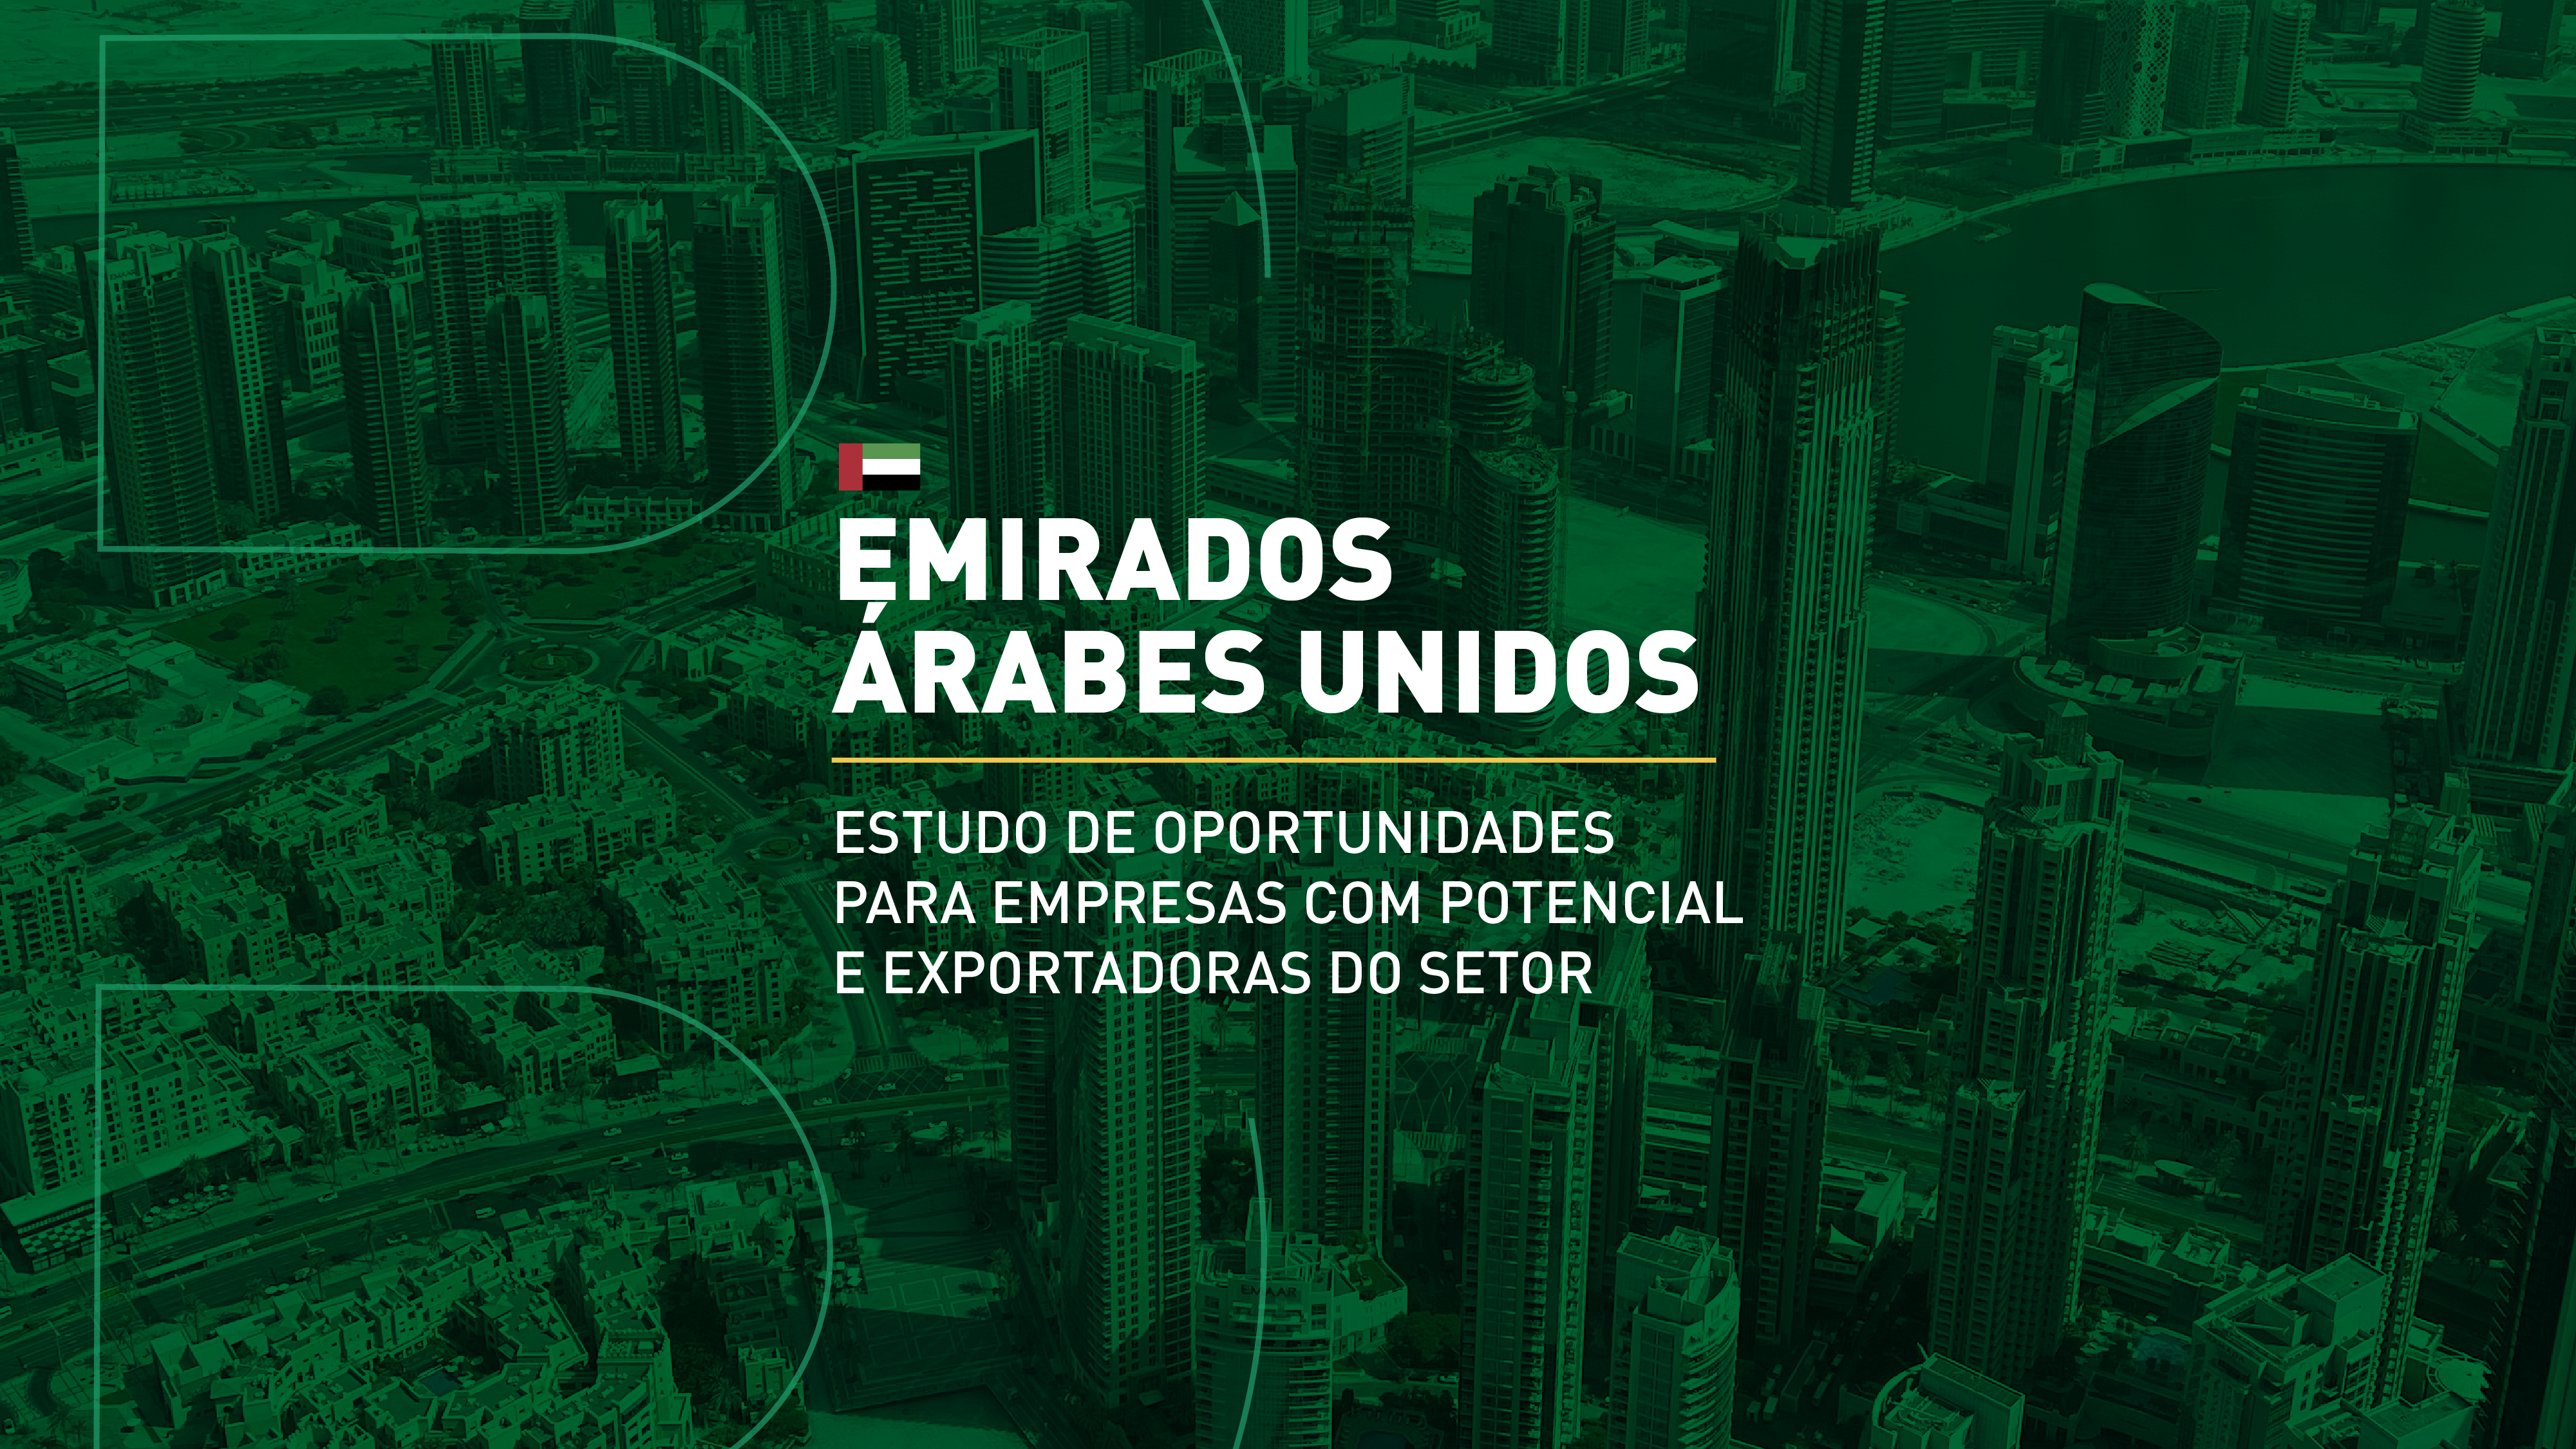 Emirados Árabes Unidos: Estudo de Oportunidades para Empresas Brasileiras de Móveis com Potencial e Exportadoras